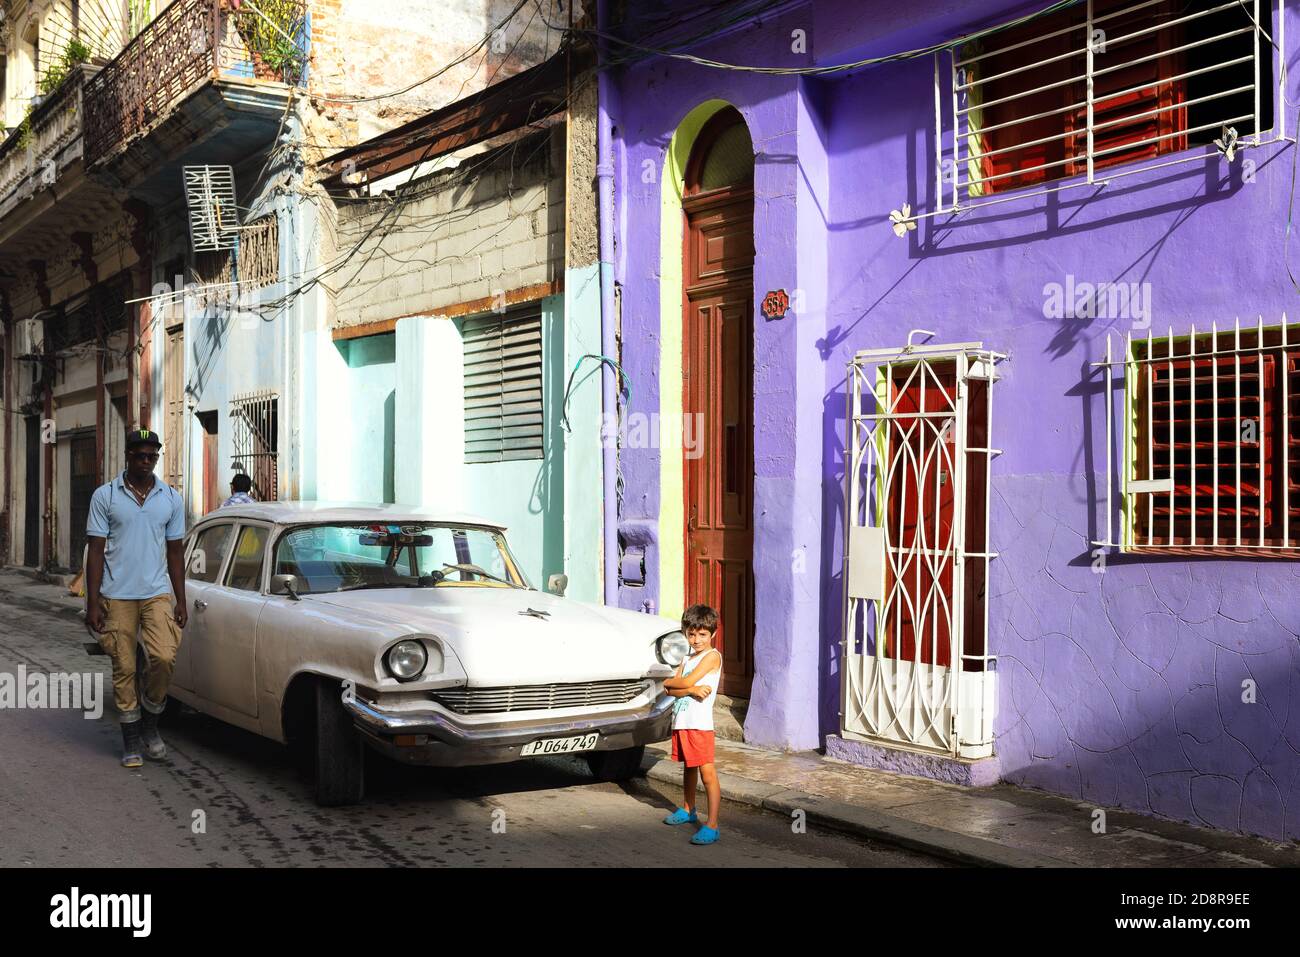 Straßenszene in Havanna Vieja, Kuba. Architektur, Menschen und amerikanische Oldtimer. Stockfoto